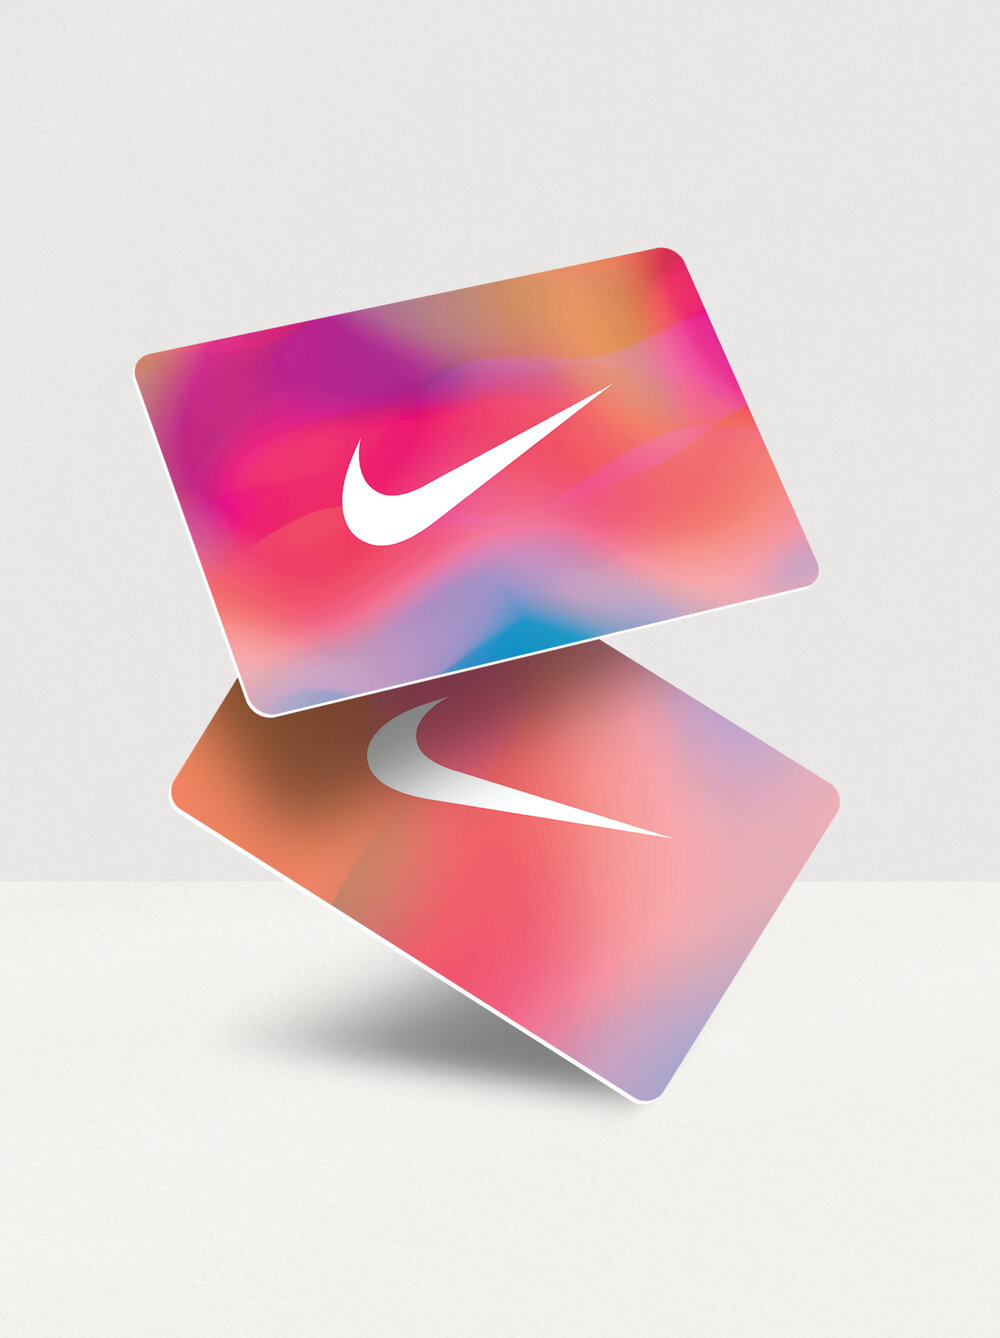 Nike: Cards — MAKELIKE